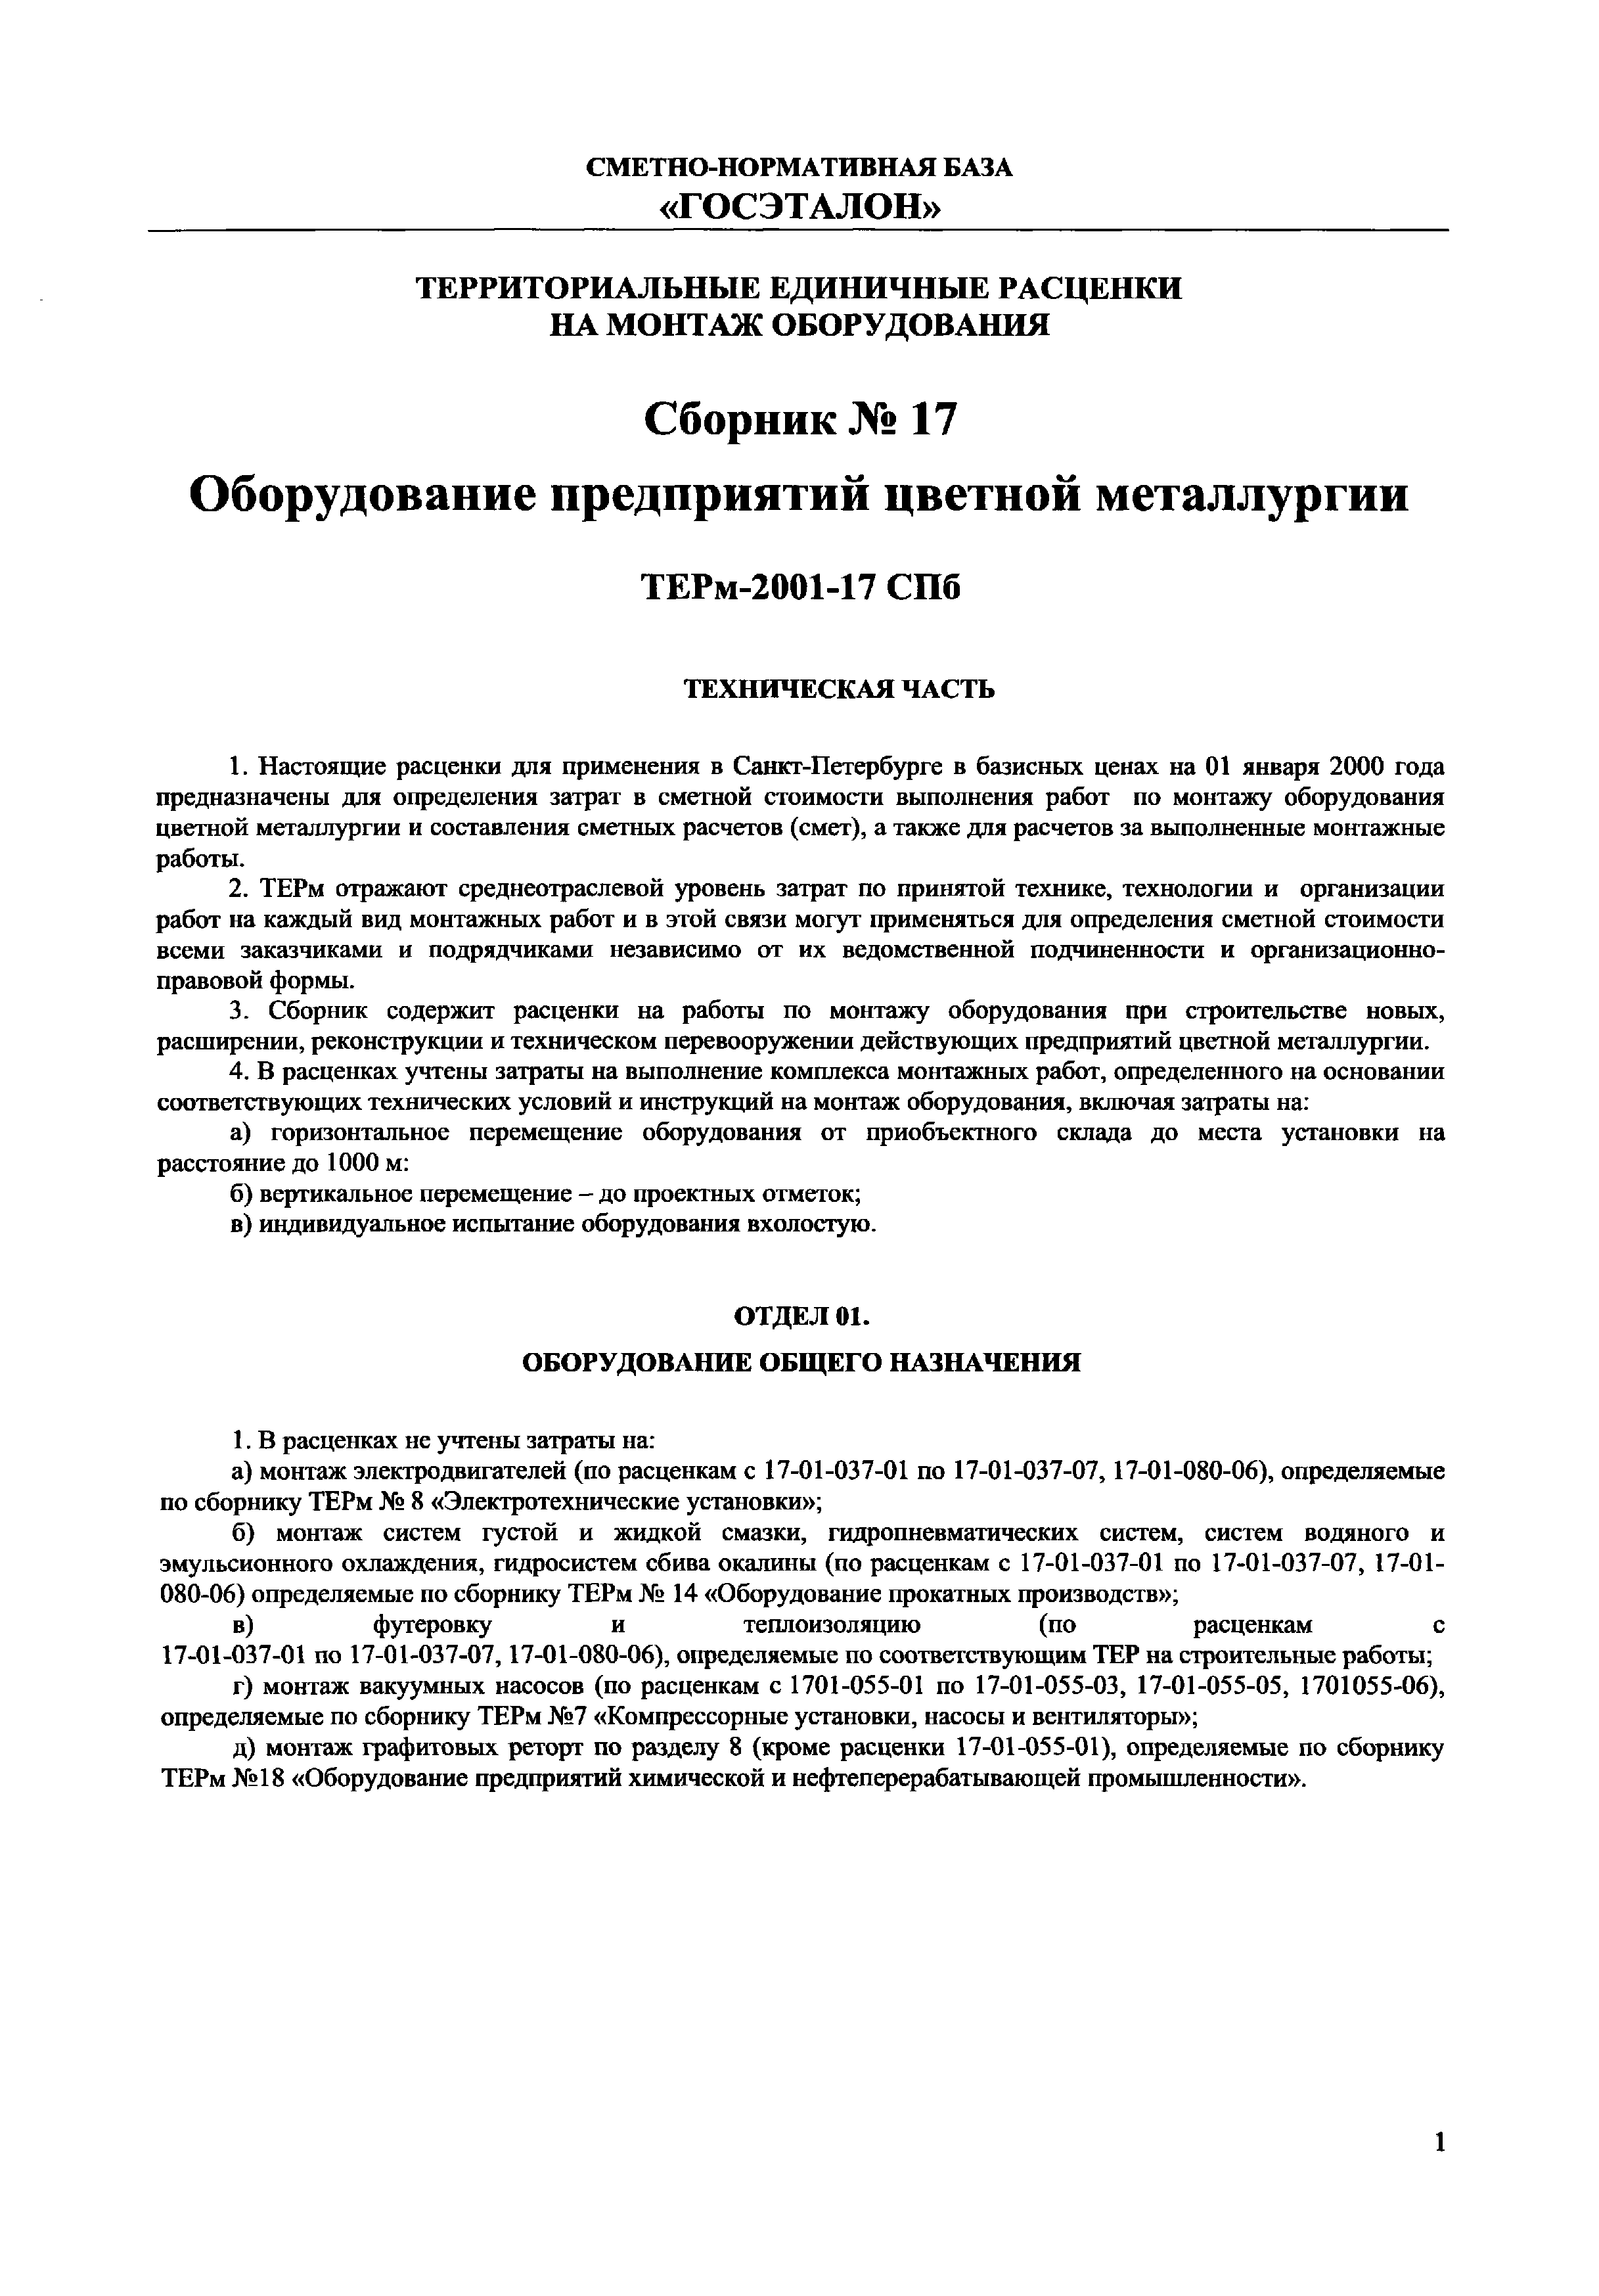 ТЕРм 2001-17 СПб